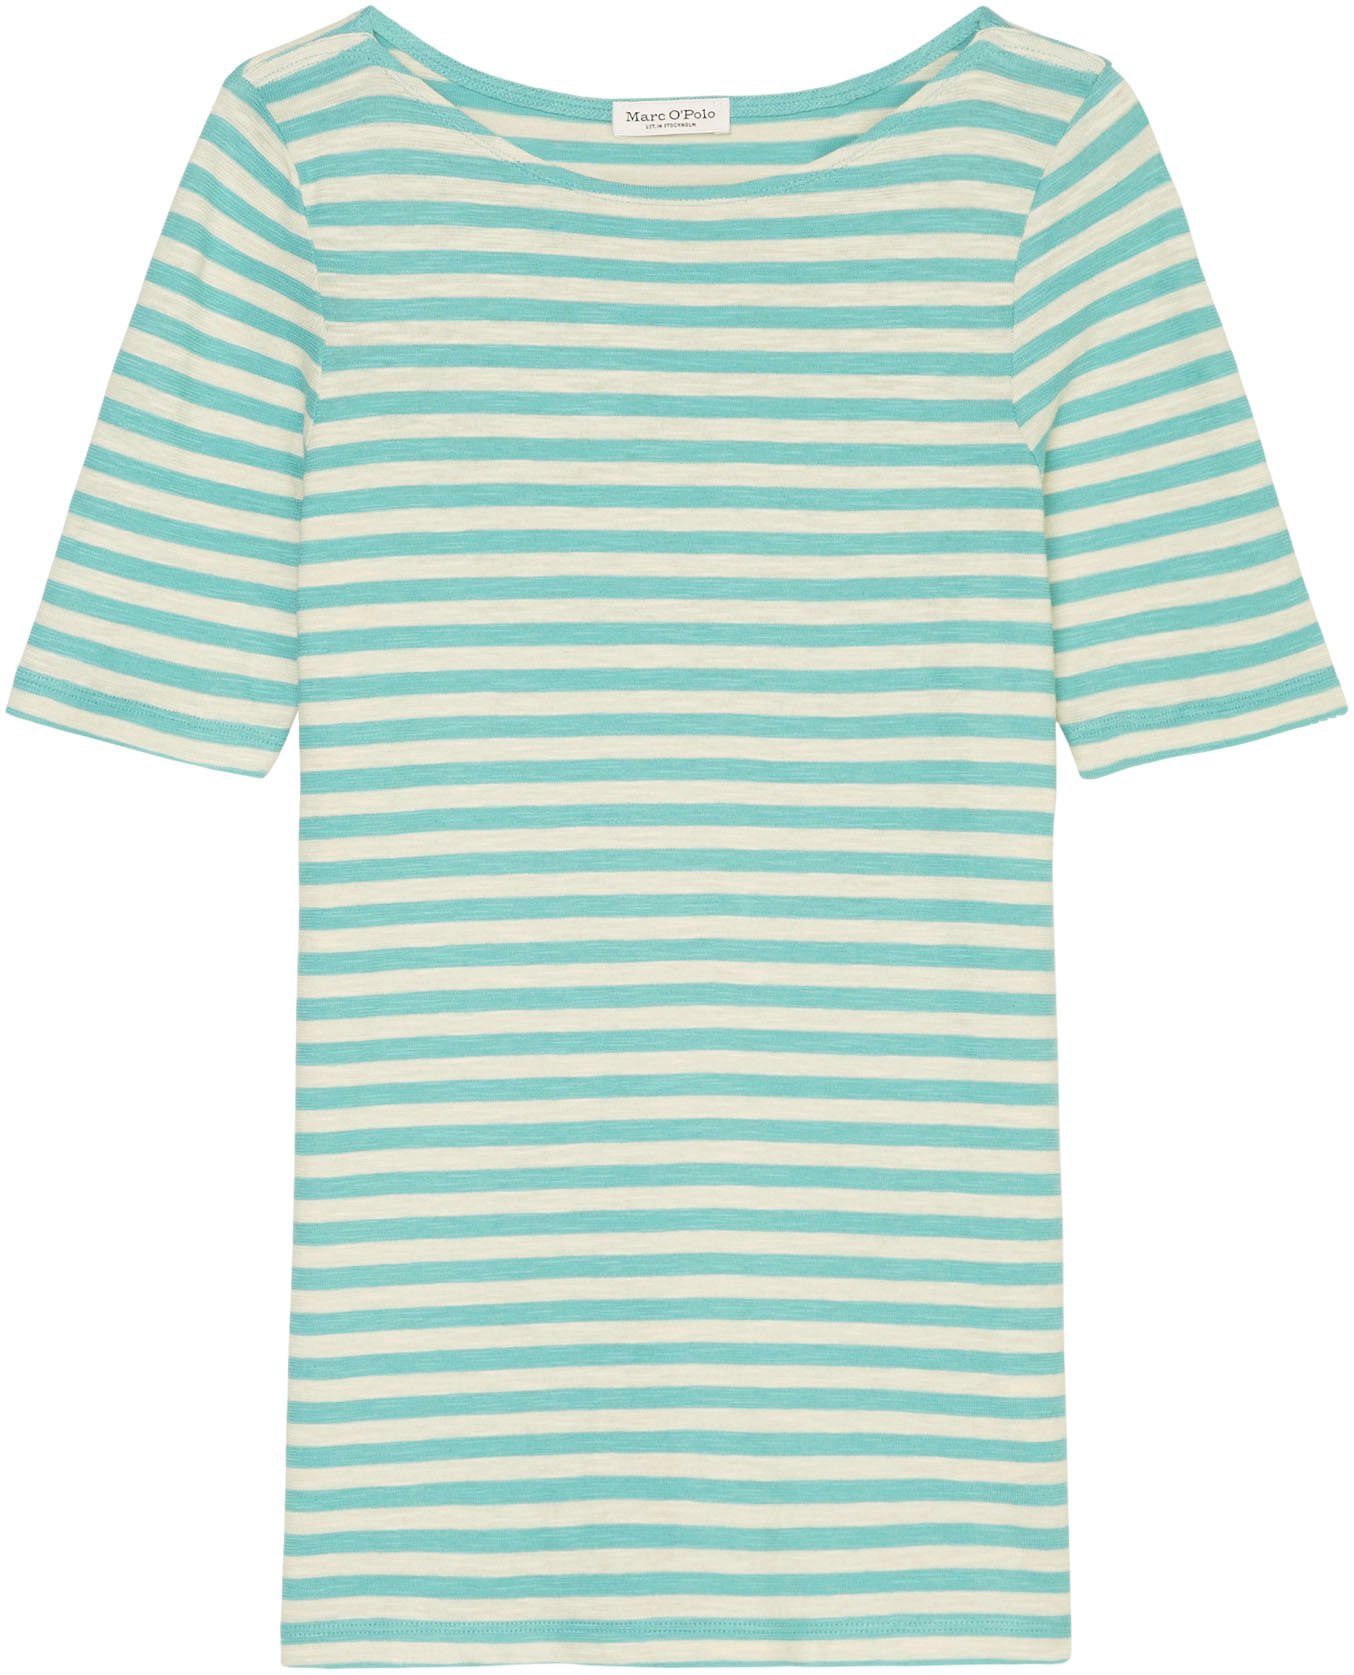 T-Shirt blue O'Polo multi/sea Marc